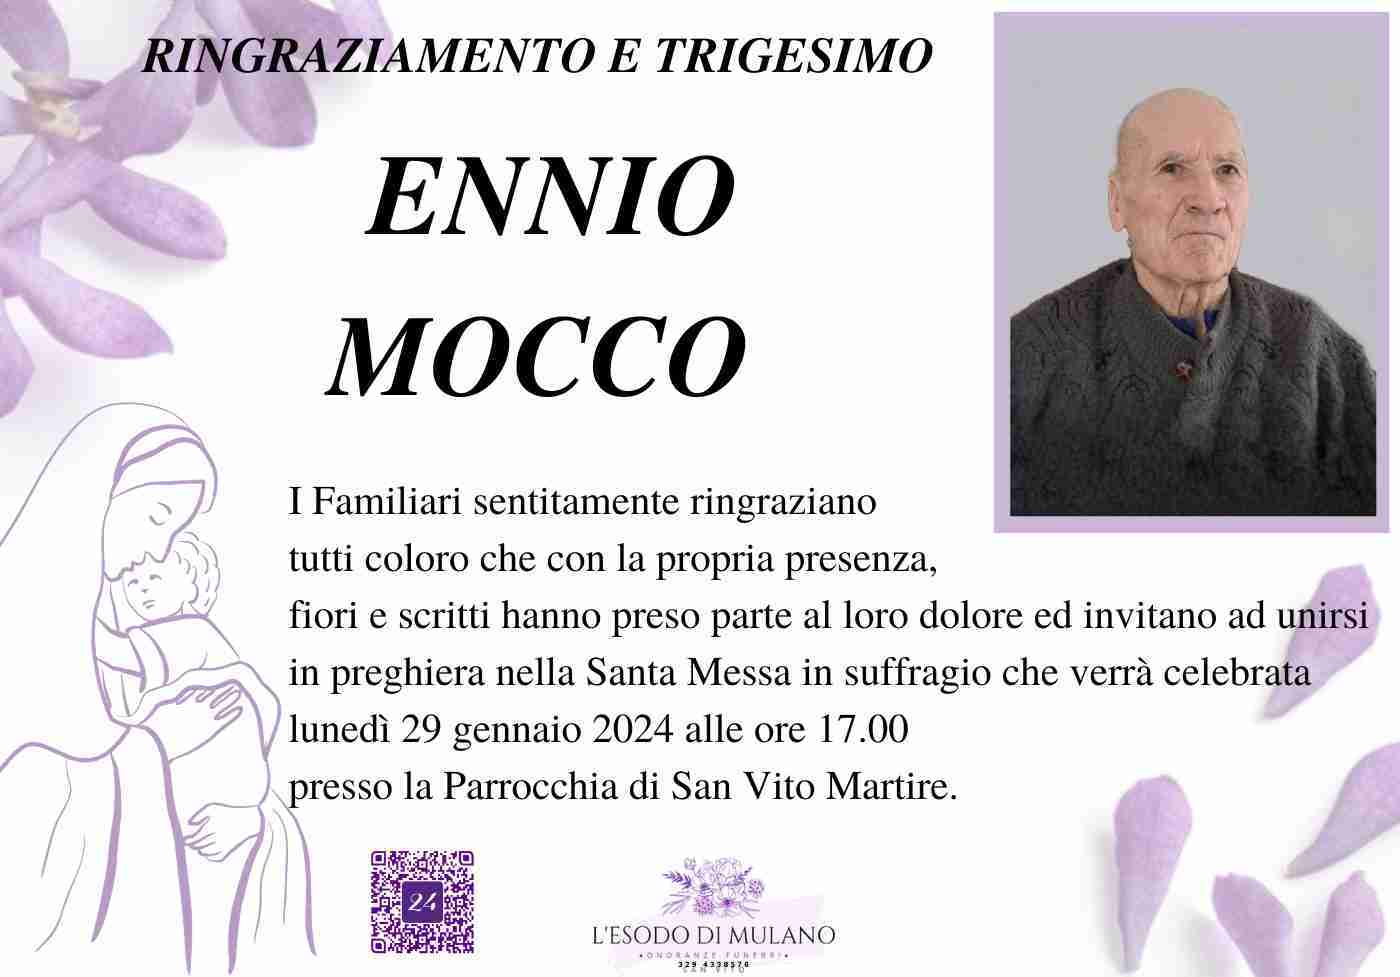 Ennio Mocco